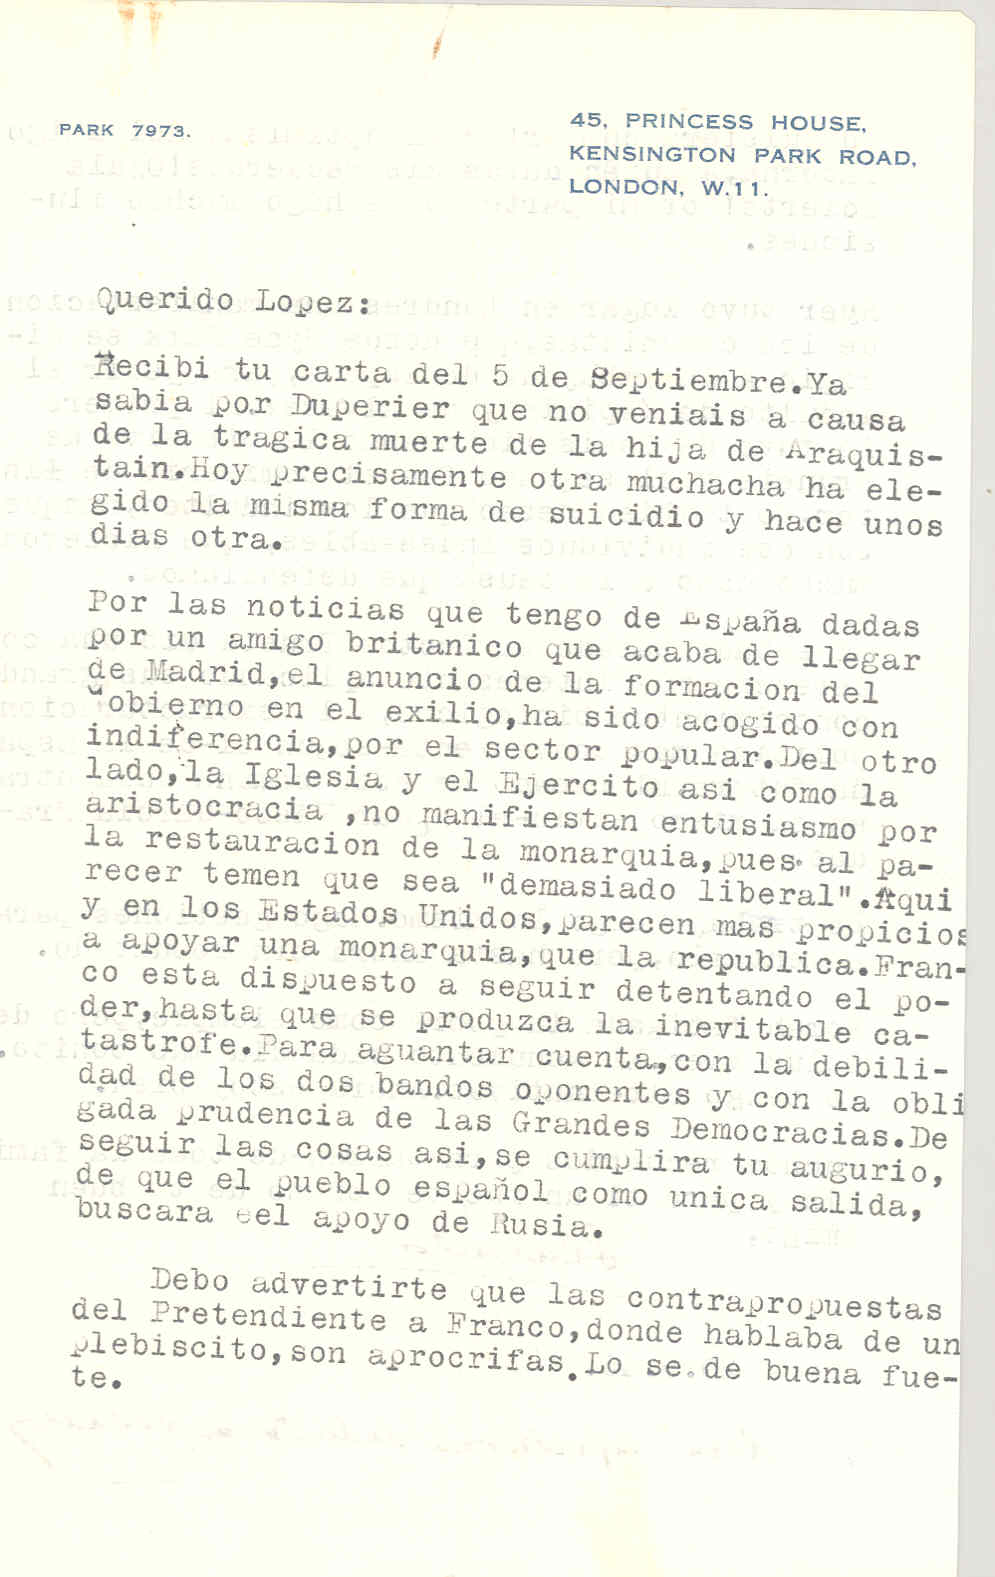 Carta de Segismundo Casado hablando de la indiferencia en España de la formación de gobierno en el exilio y de seguir las cosas así el pueblo español terminará pidiendo el apoyo a Rusia.